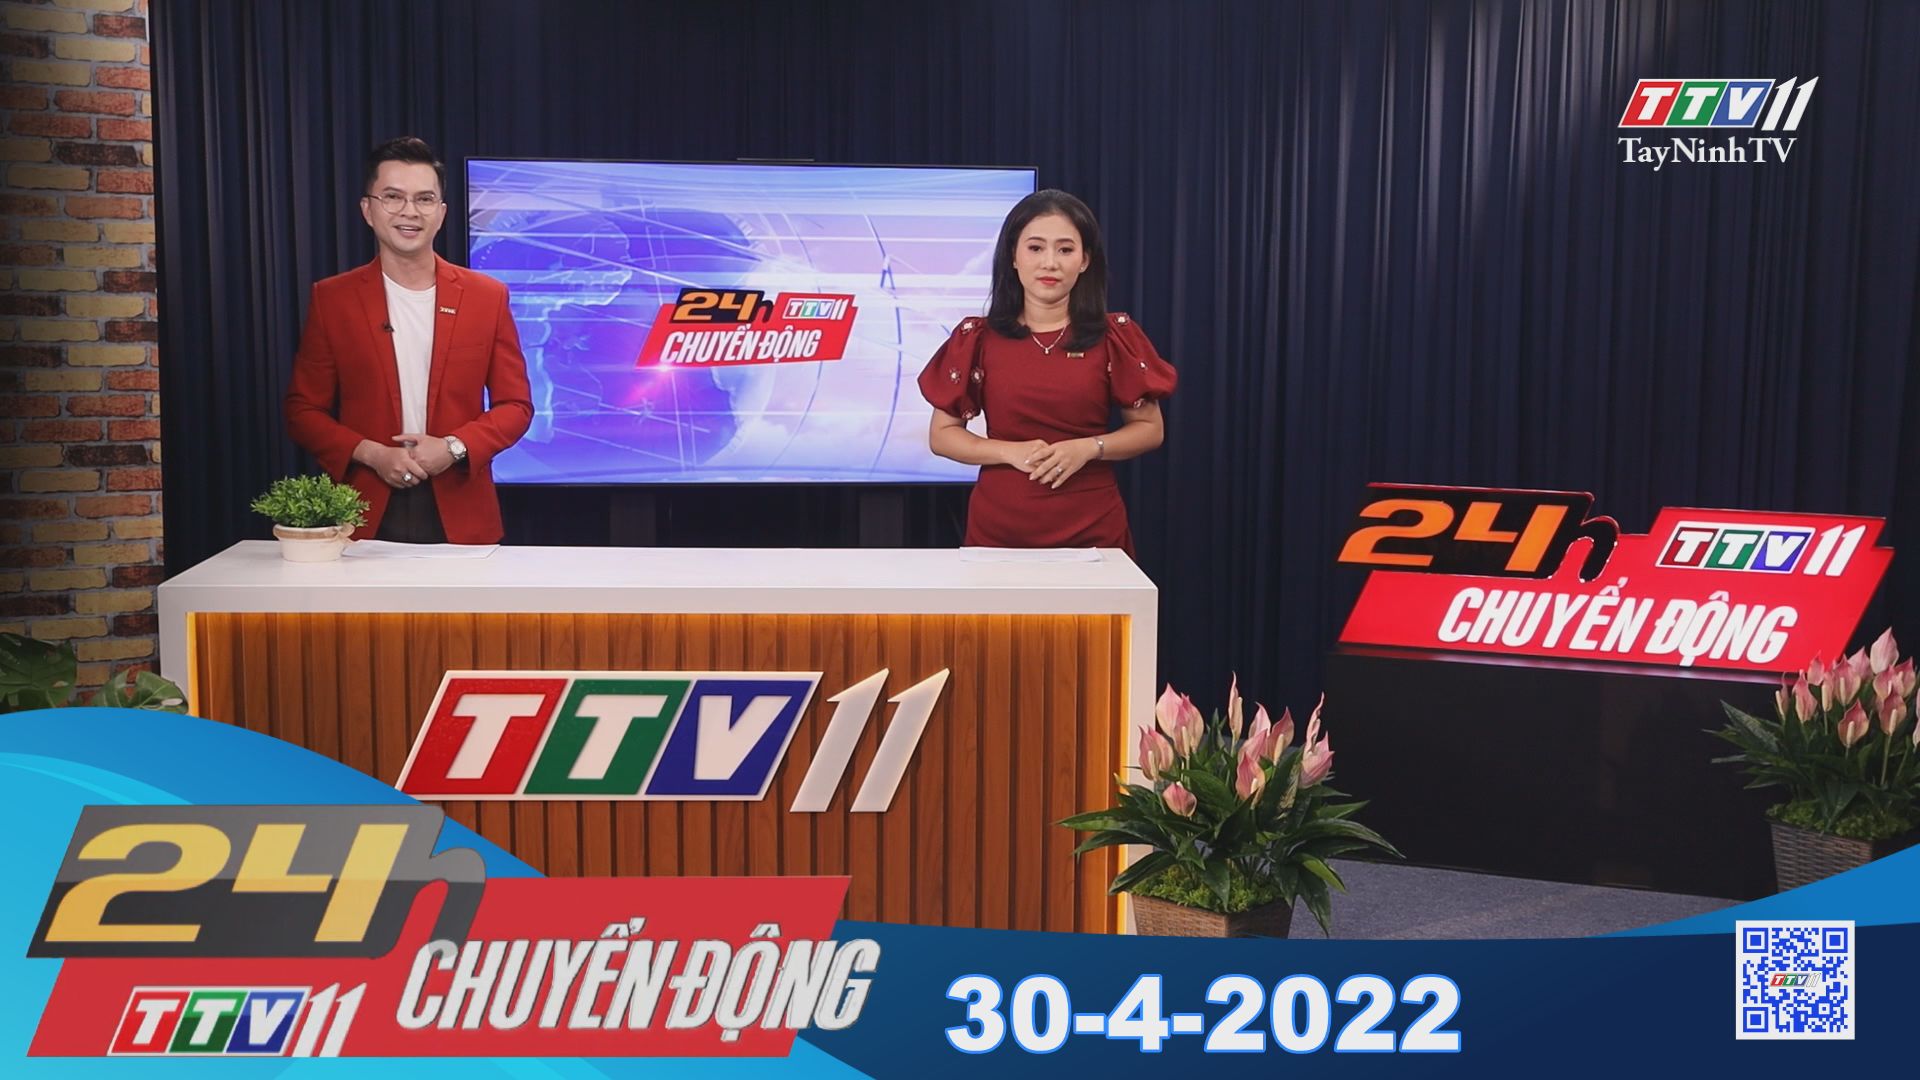 24h Chuyển động 30-4-2022 | Tin tức hôm nay | TayNinhTV